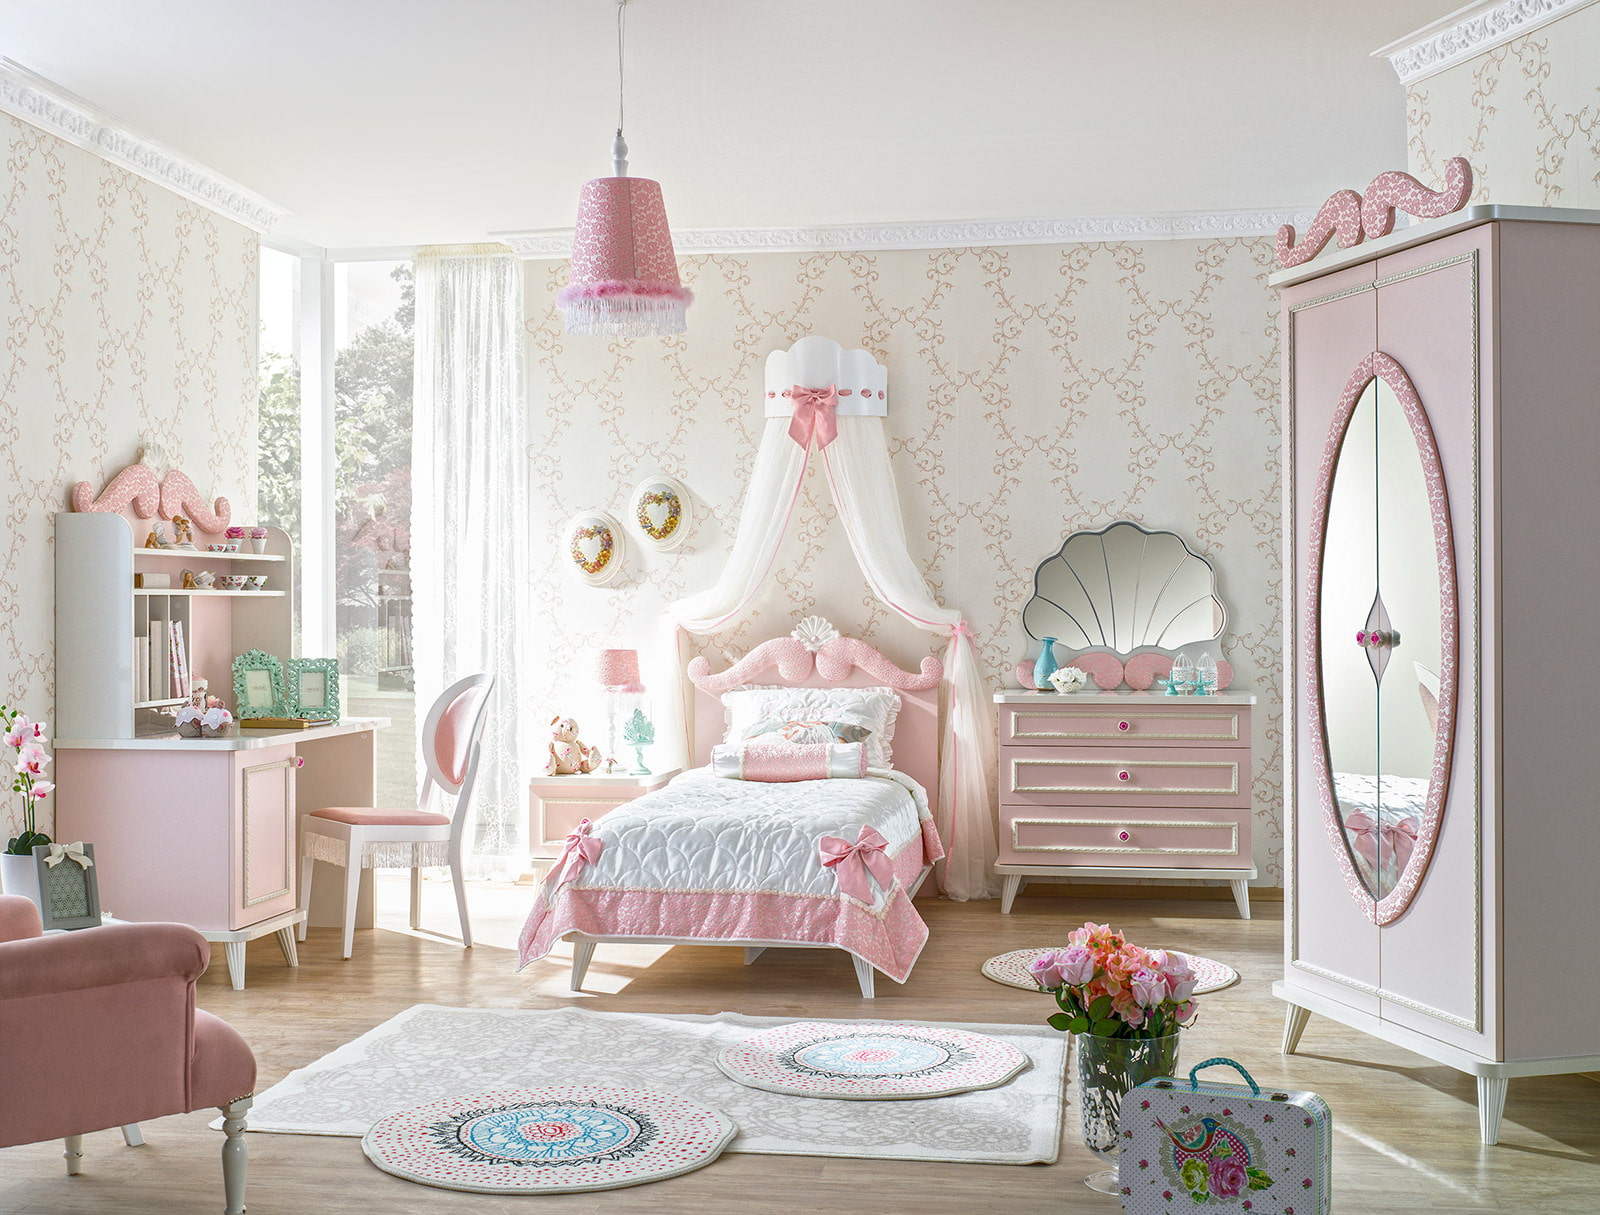 Παιδικό δωμάτιο σε ροζ χρώμα